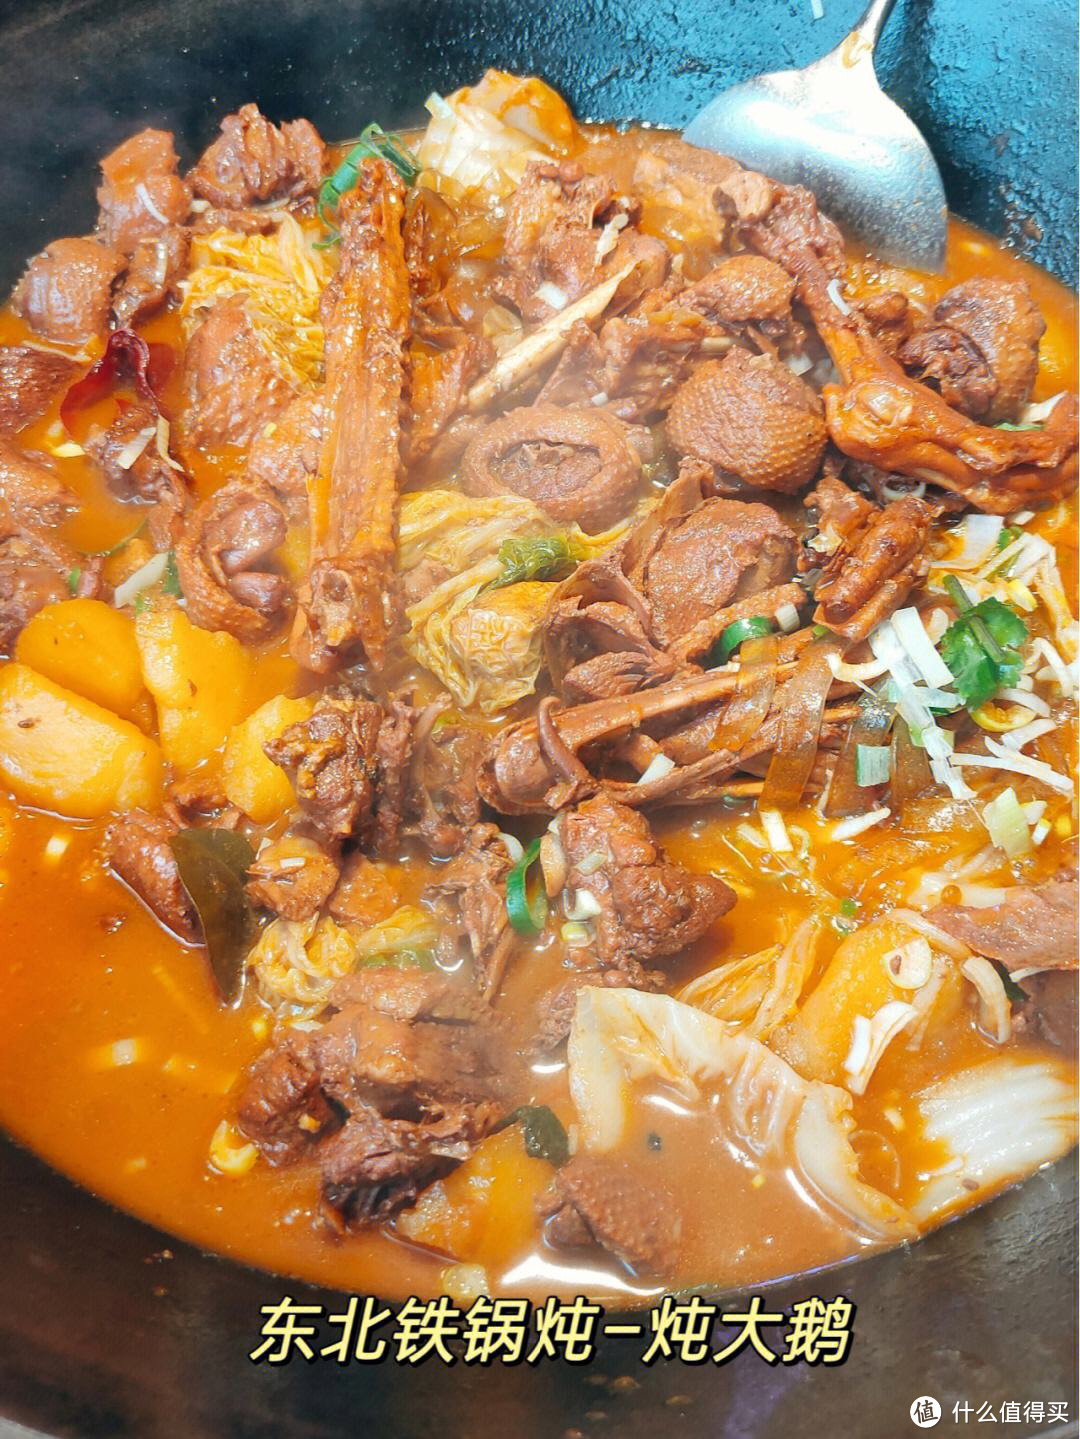 铁锅炖大鹅，传承千年北方美食文化